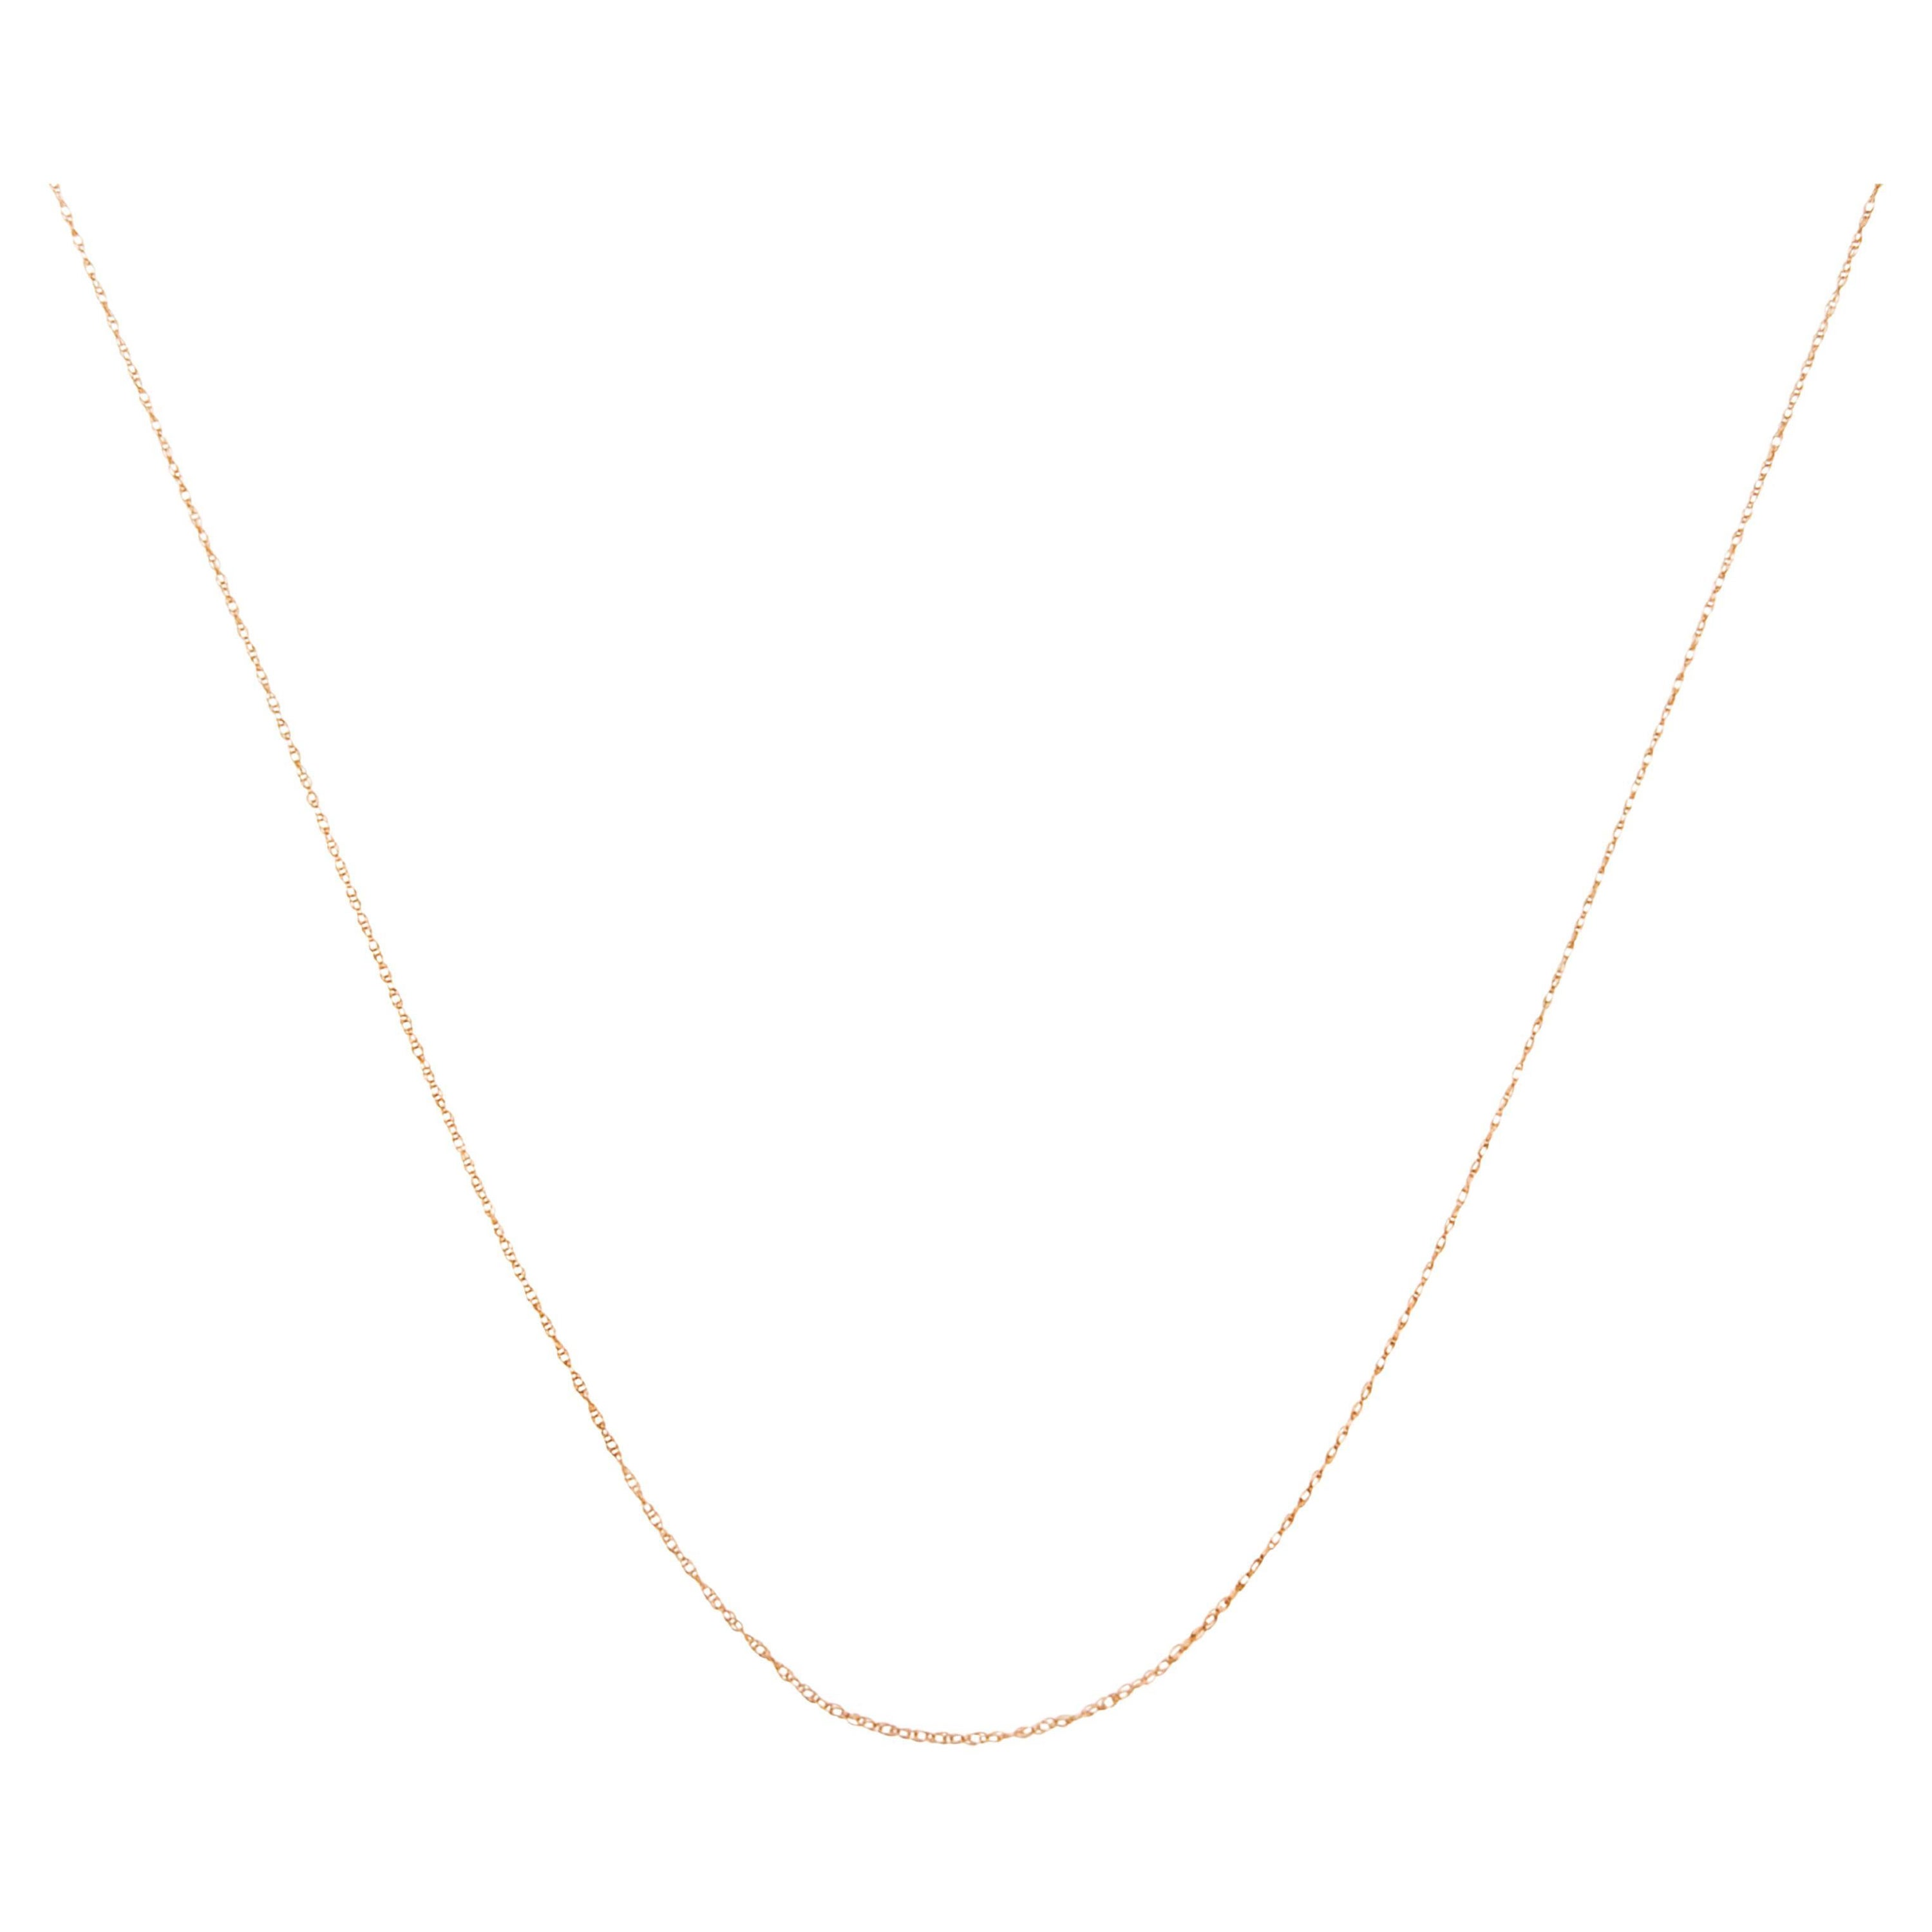 Collier à chaîne unisexe en or rose massif 10 carats, mince et souple